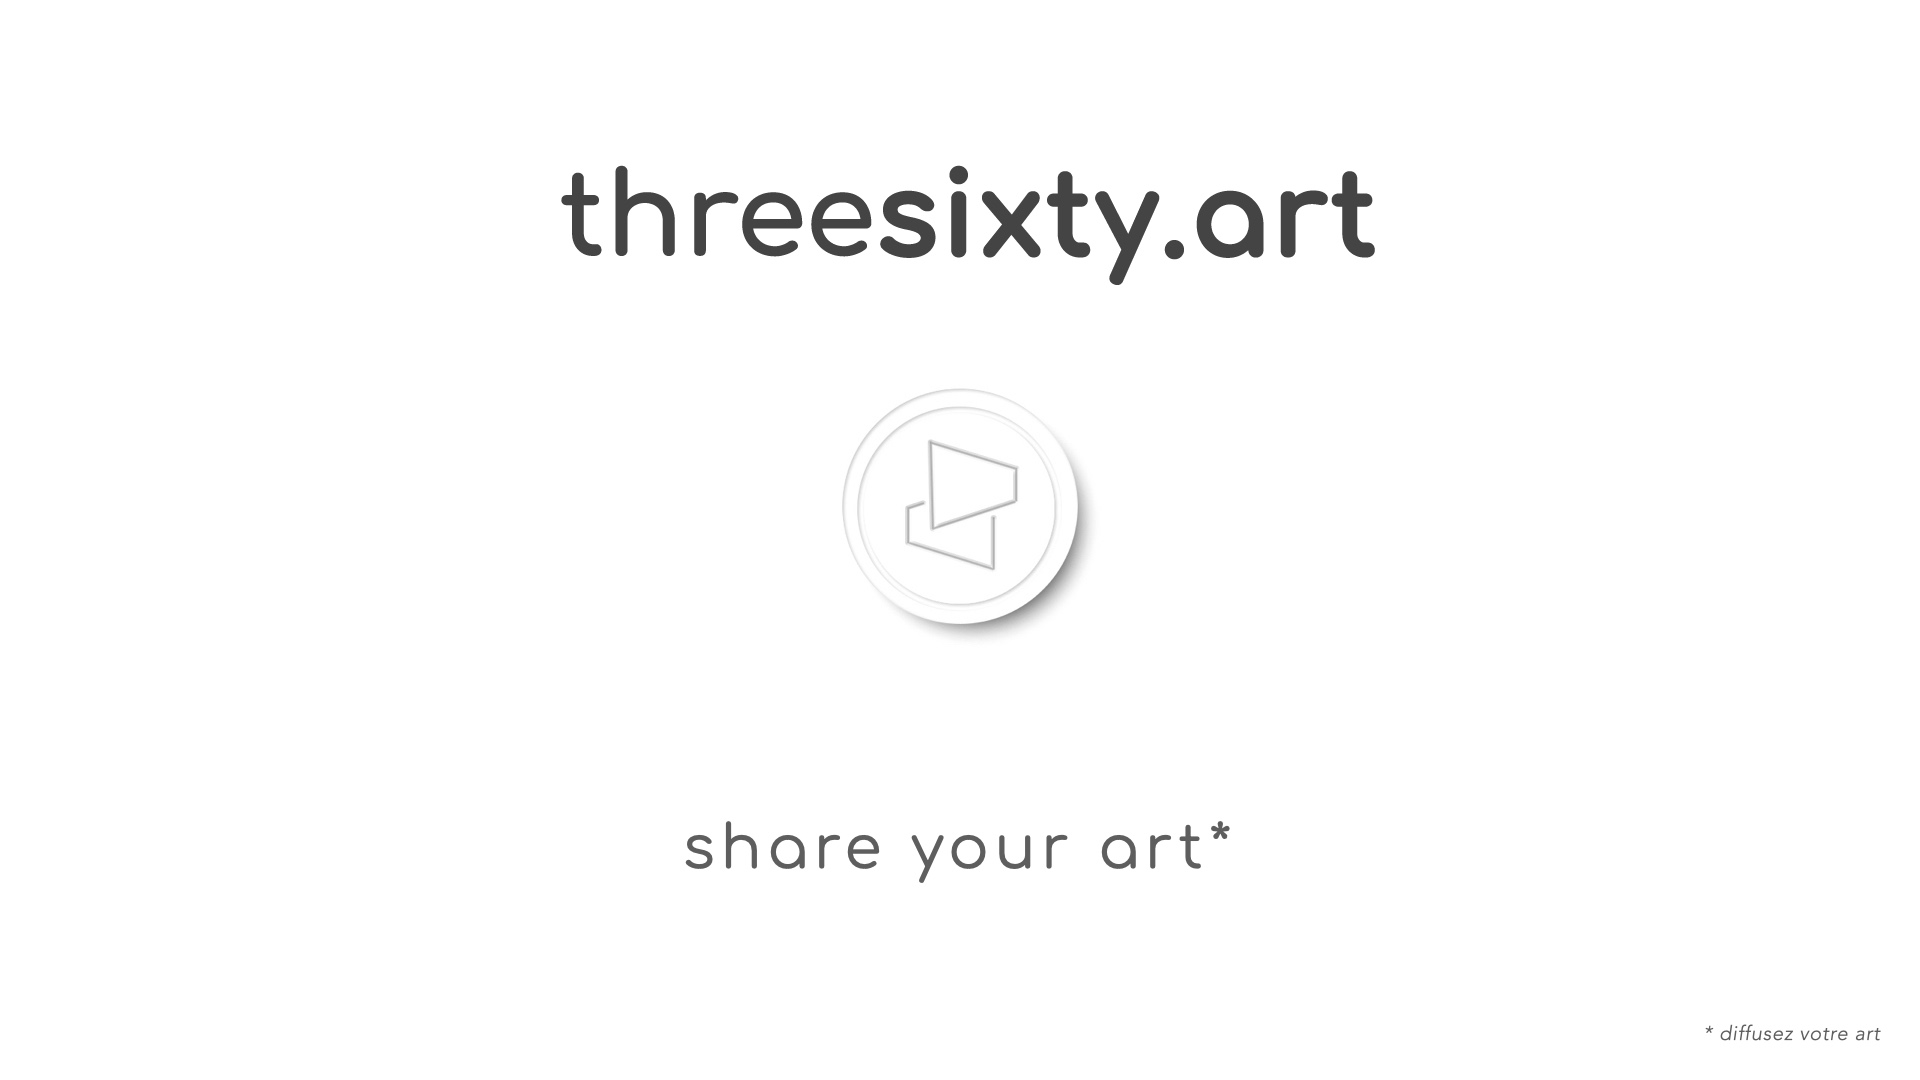 threesixty.art coming soon